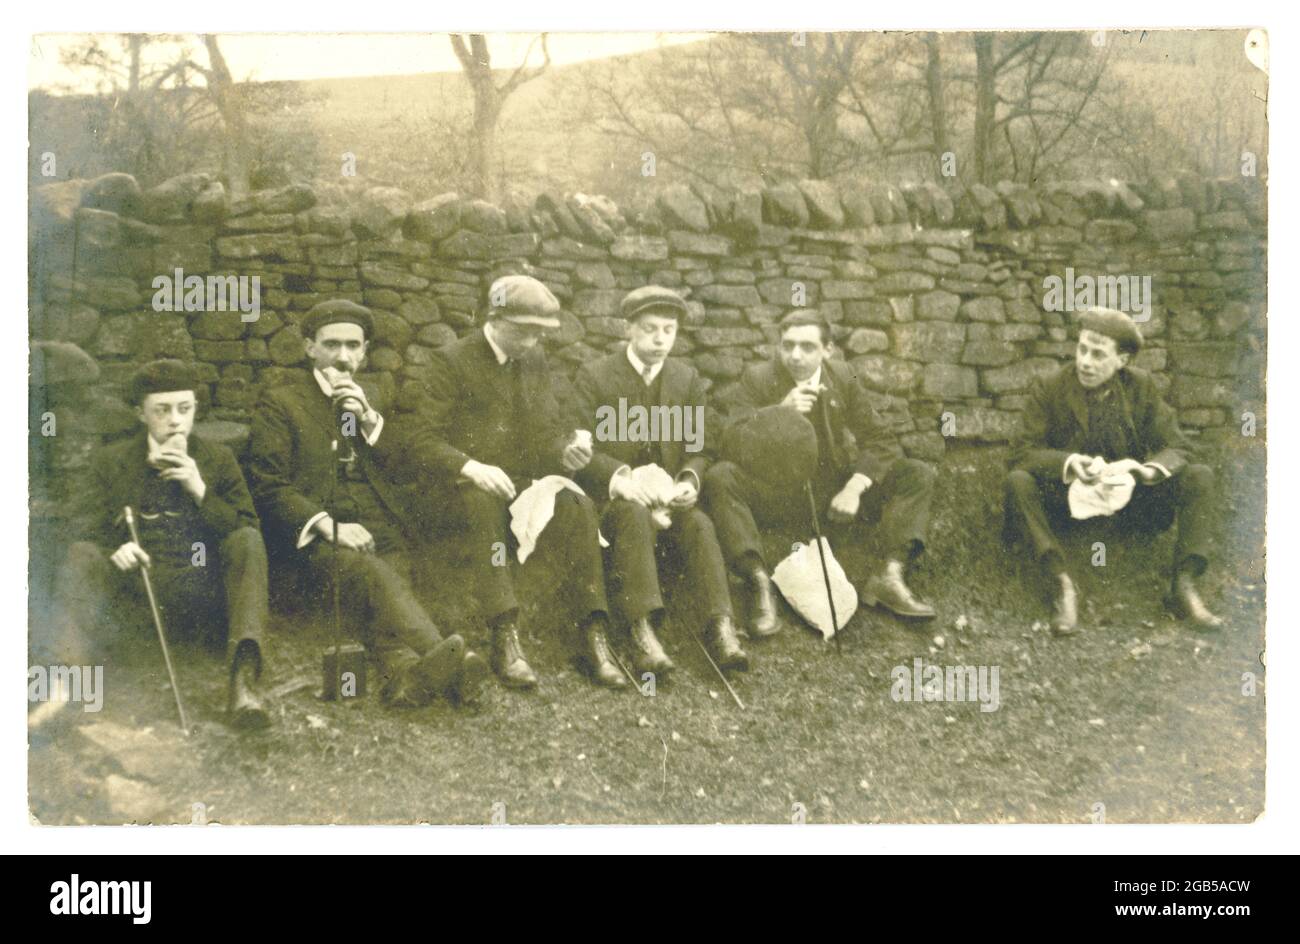 Carte postale originale du début des années 1900 de jeunes hommes qui mangent le déjeuner sur une rampe, vers le début des années 1920 au Royaume-Uni Banque D'Images